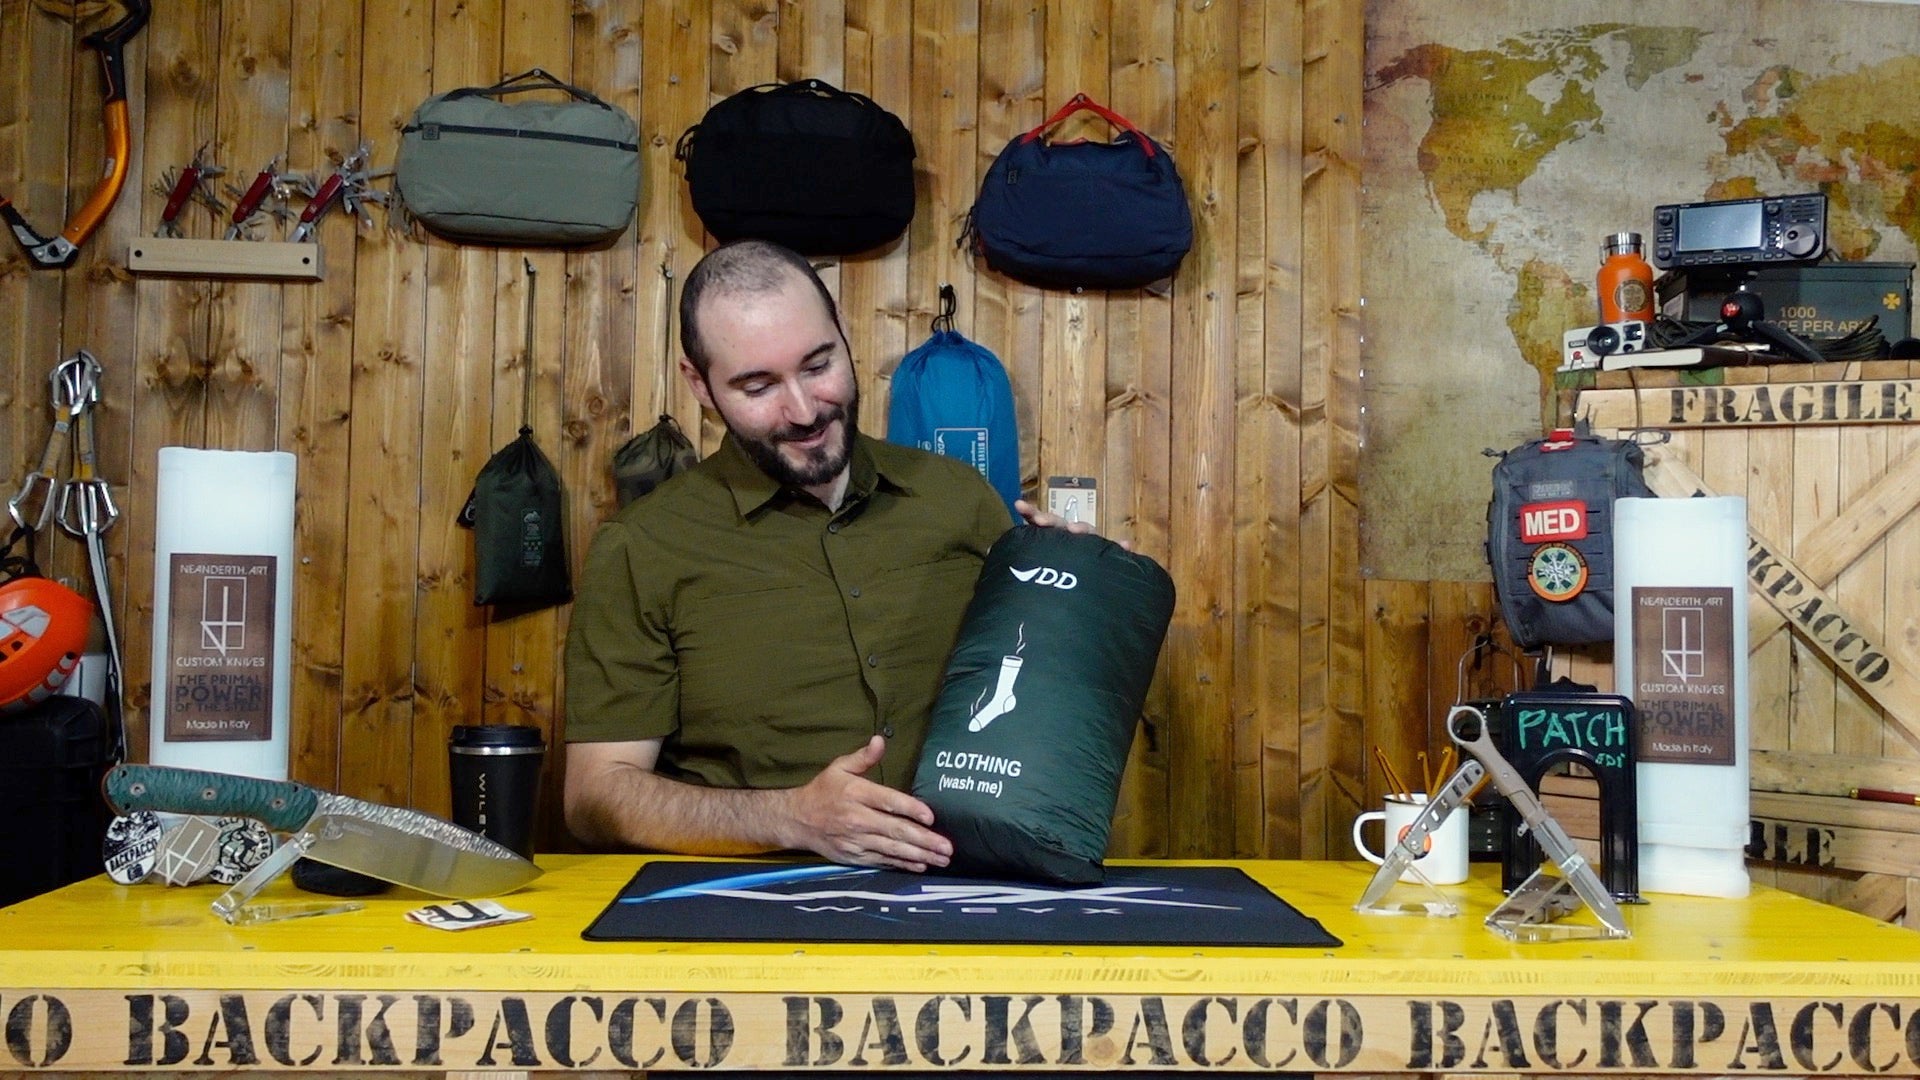 Paolo di Backpacco spiega gli organiser bags di DD